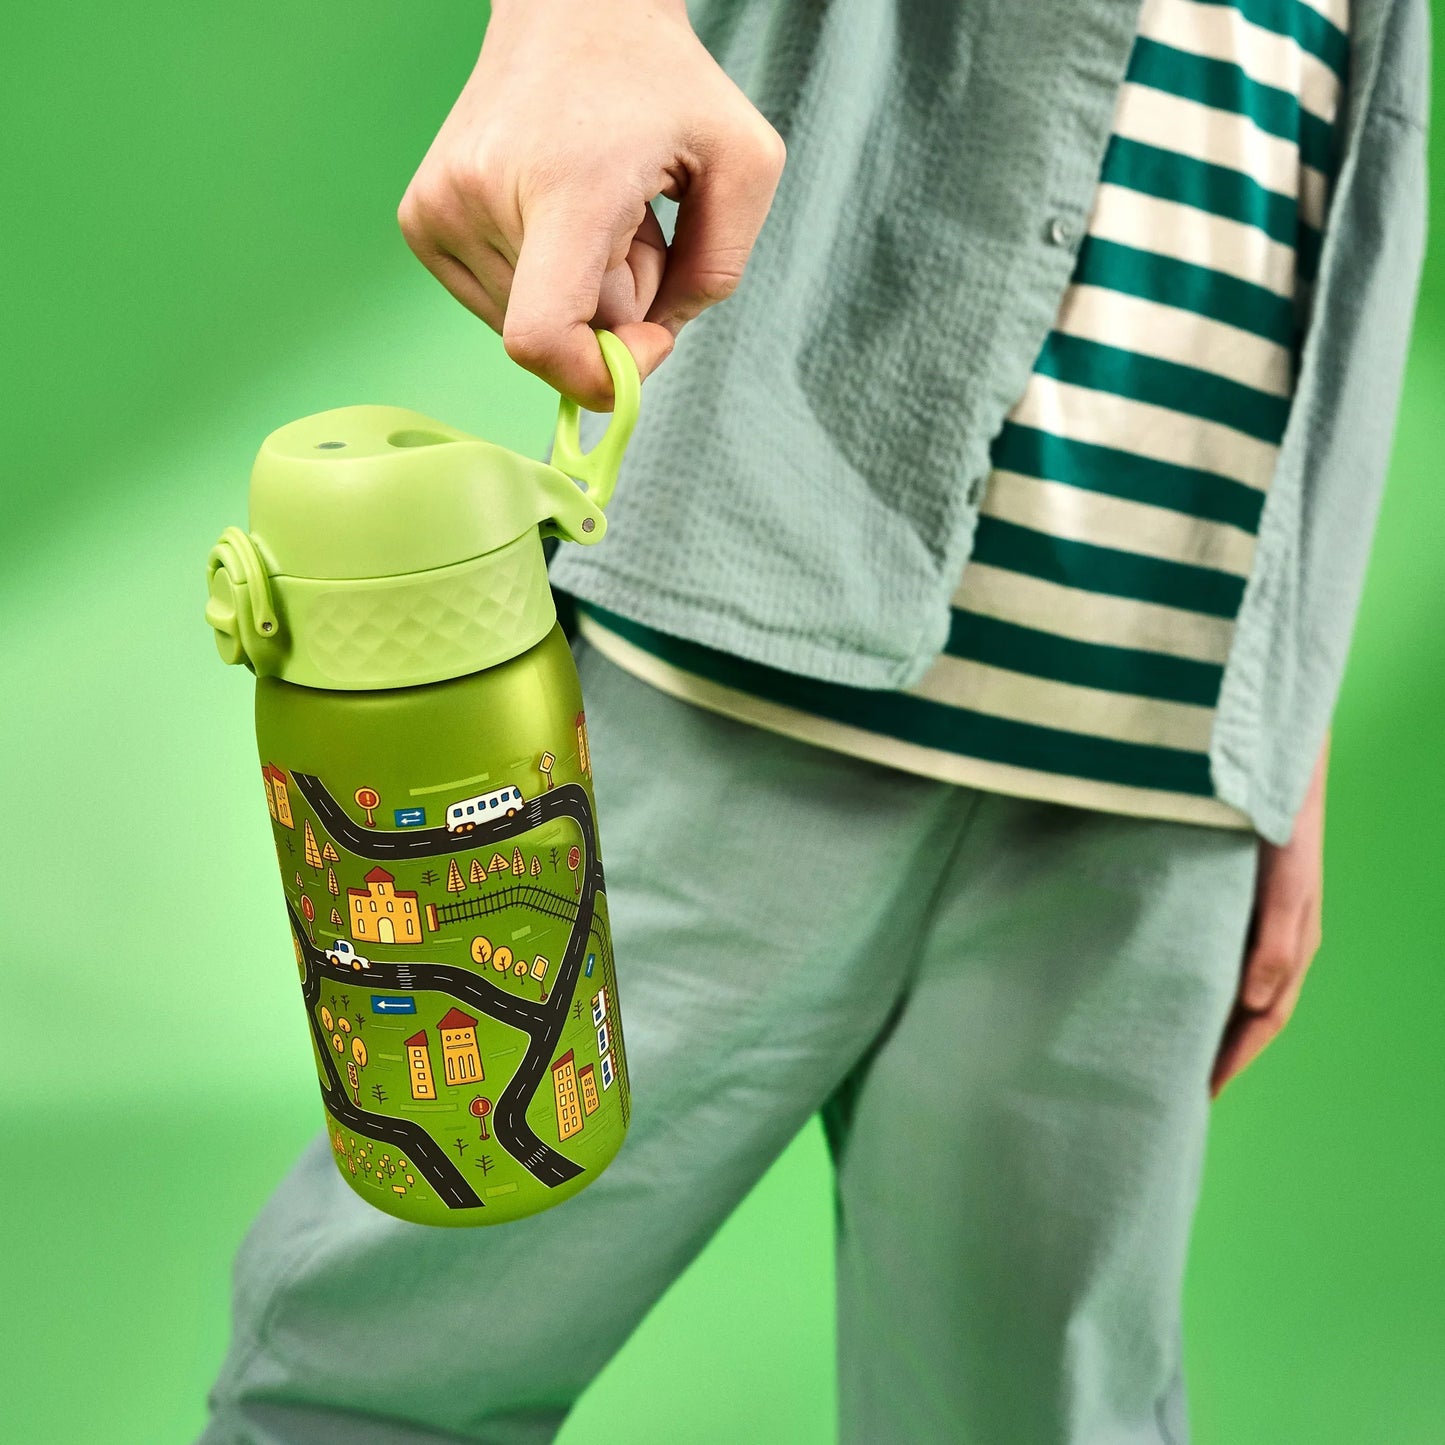 Leak Proof Kids Water Bottle, Recyclon™, Cars, 350ml (12oz)